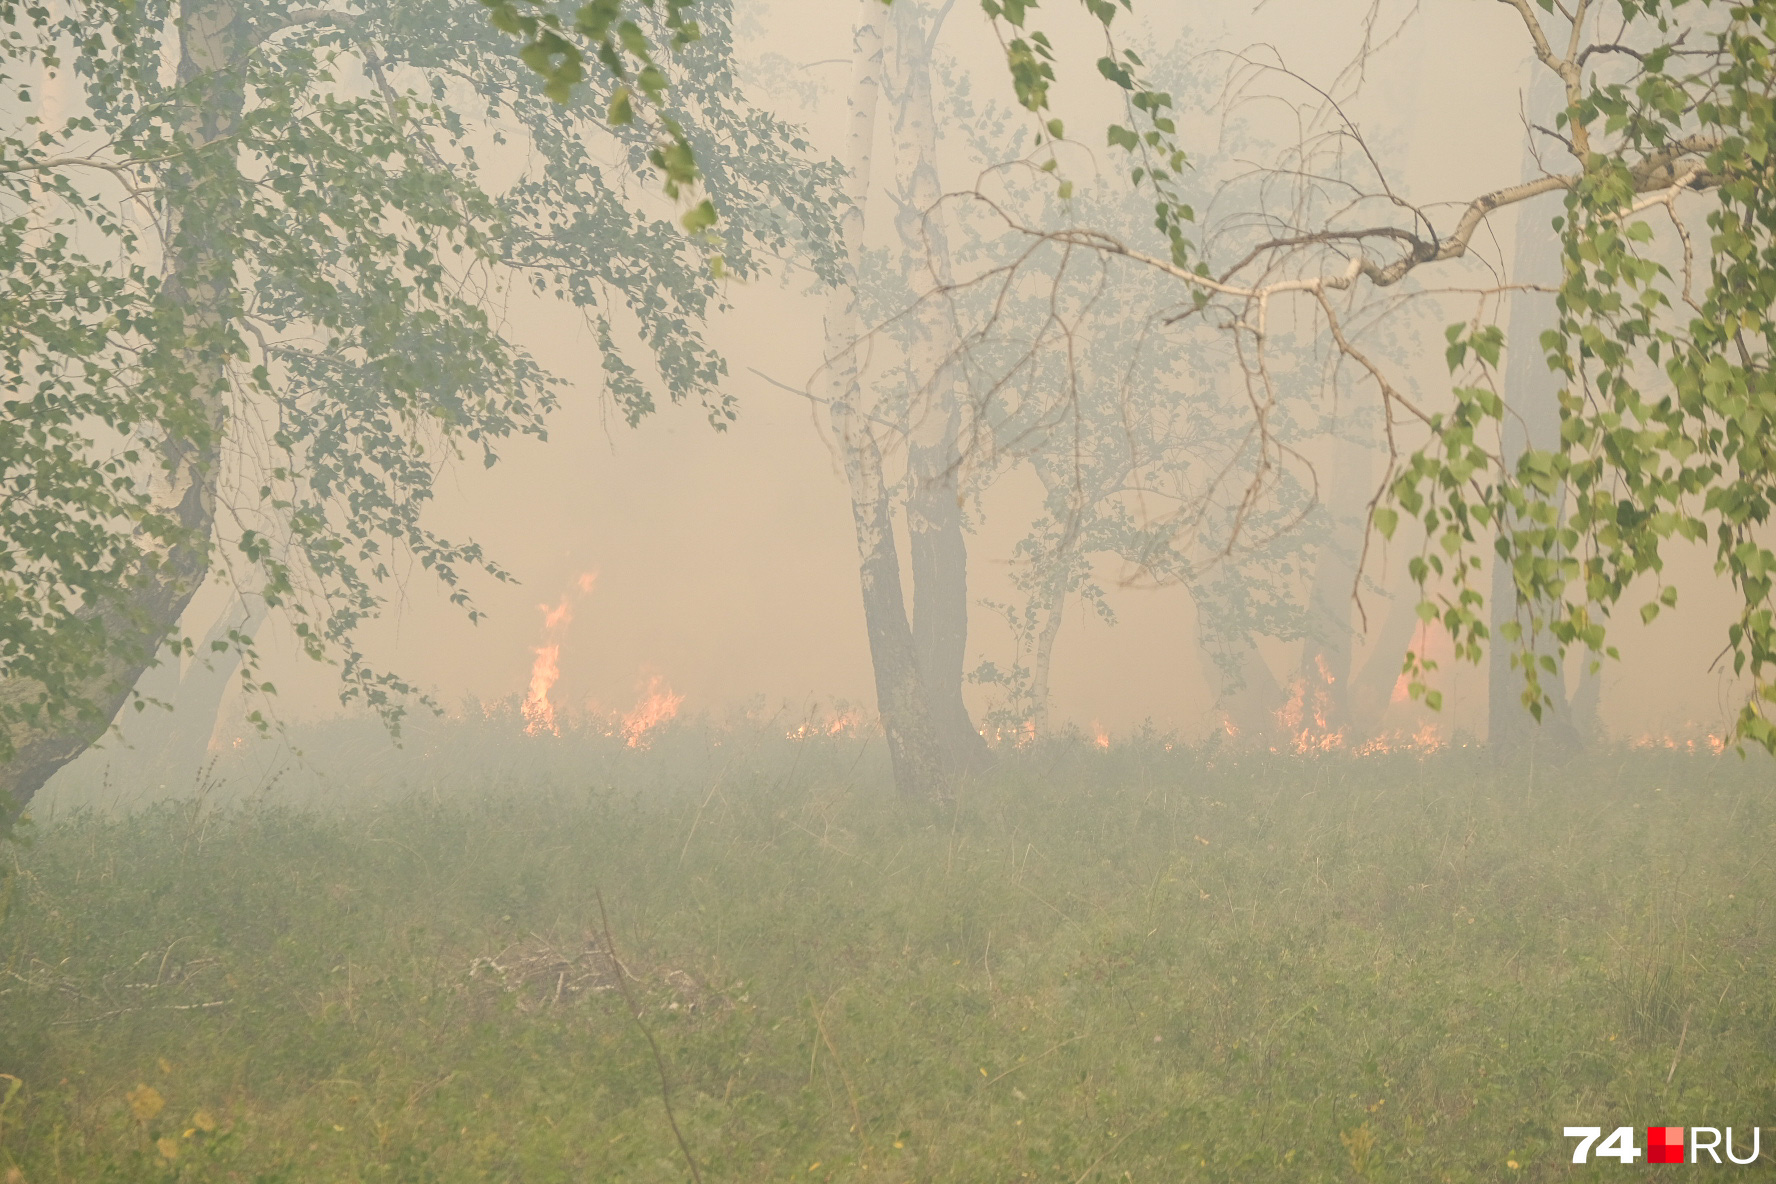 Опасность лесных возгораний — в их непредсказуемости и сложностях подъезда. Пожарная машина среди деревьев бесполезна